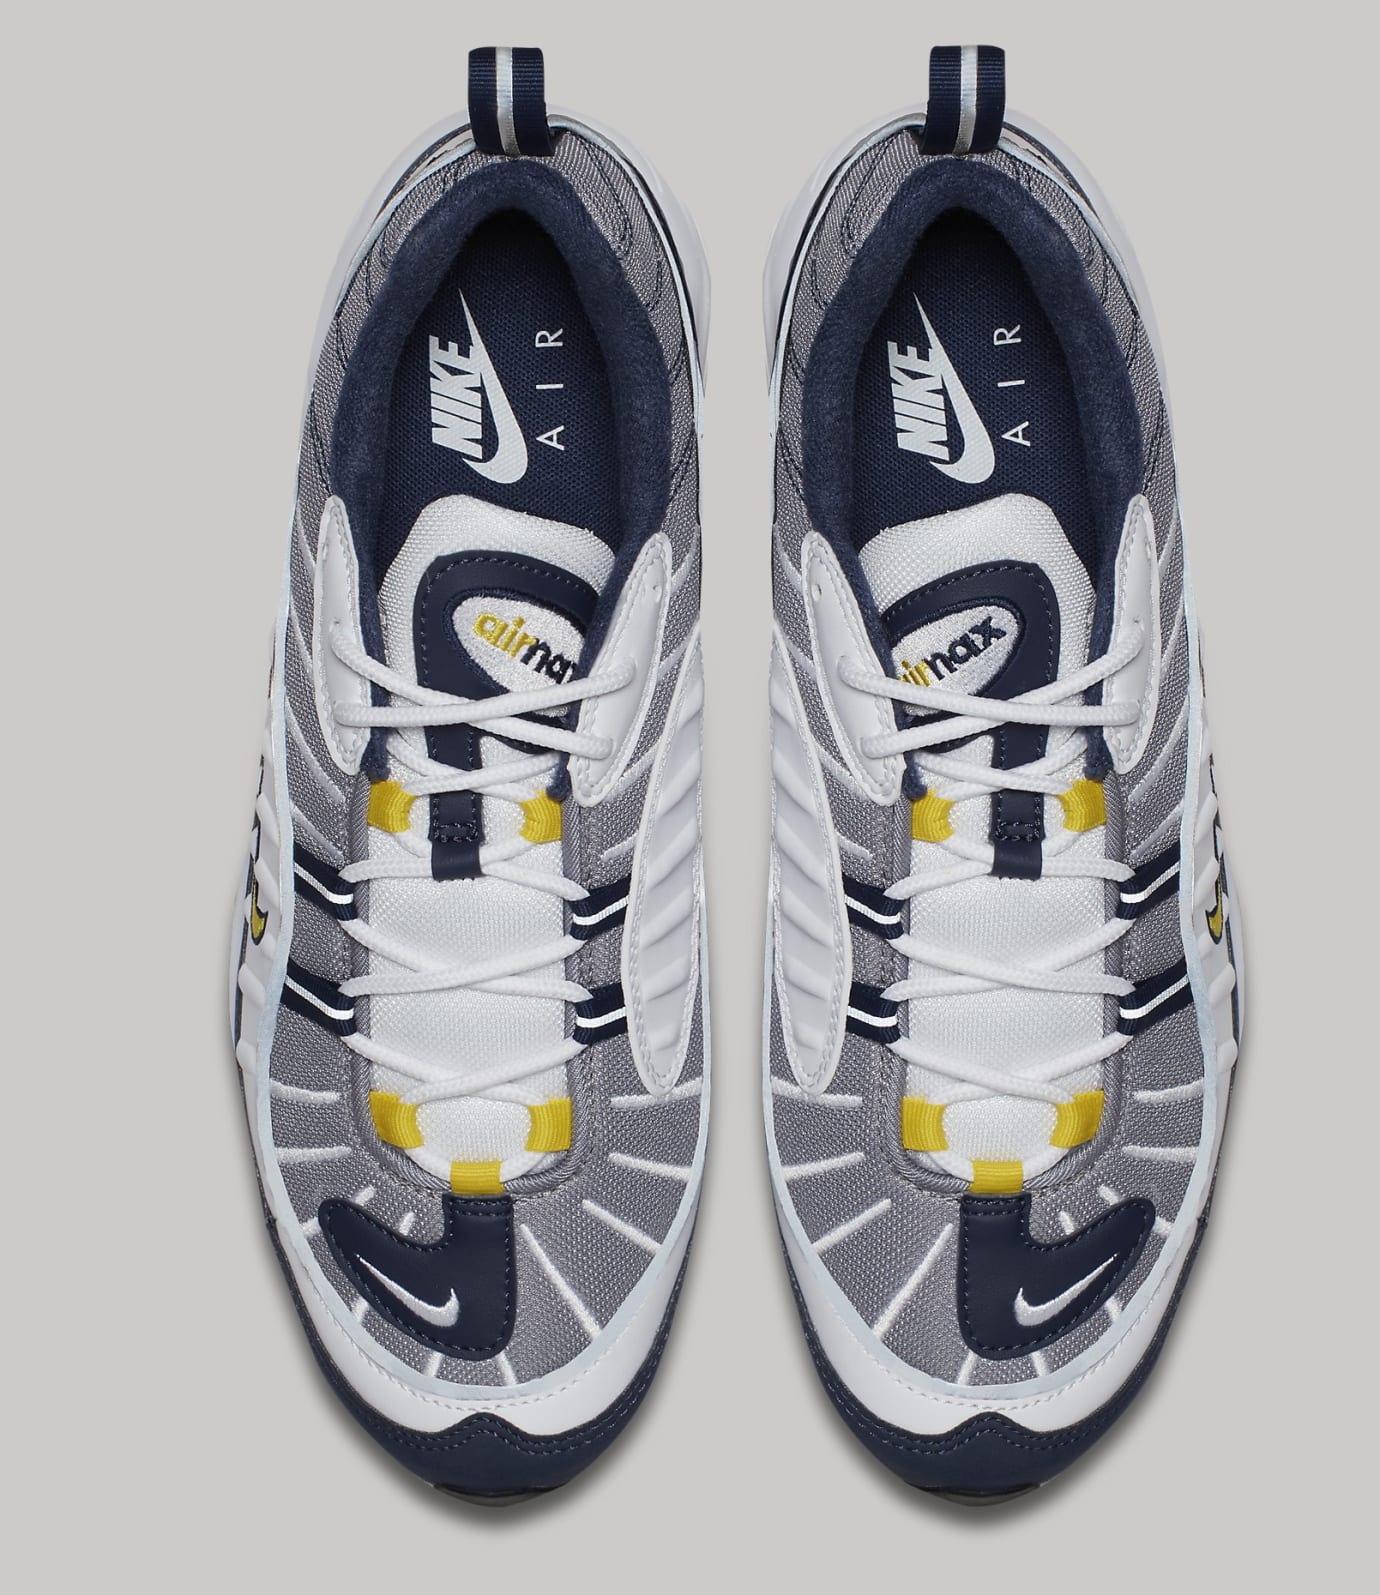 Oh querido fuga de la prisión Generosidad Nike Air Max 98 'Tour Yellow' Releasing on Jan. 26 | Sole Collector